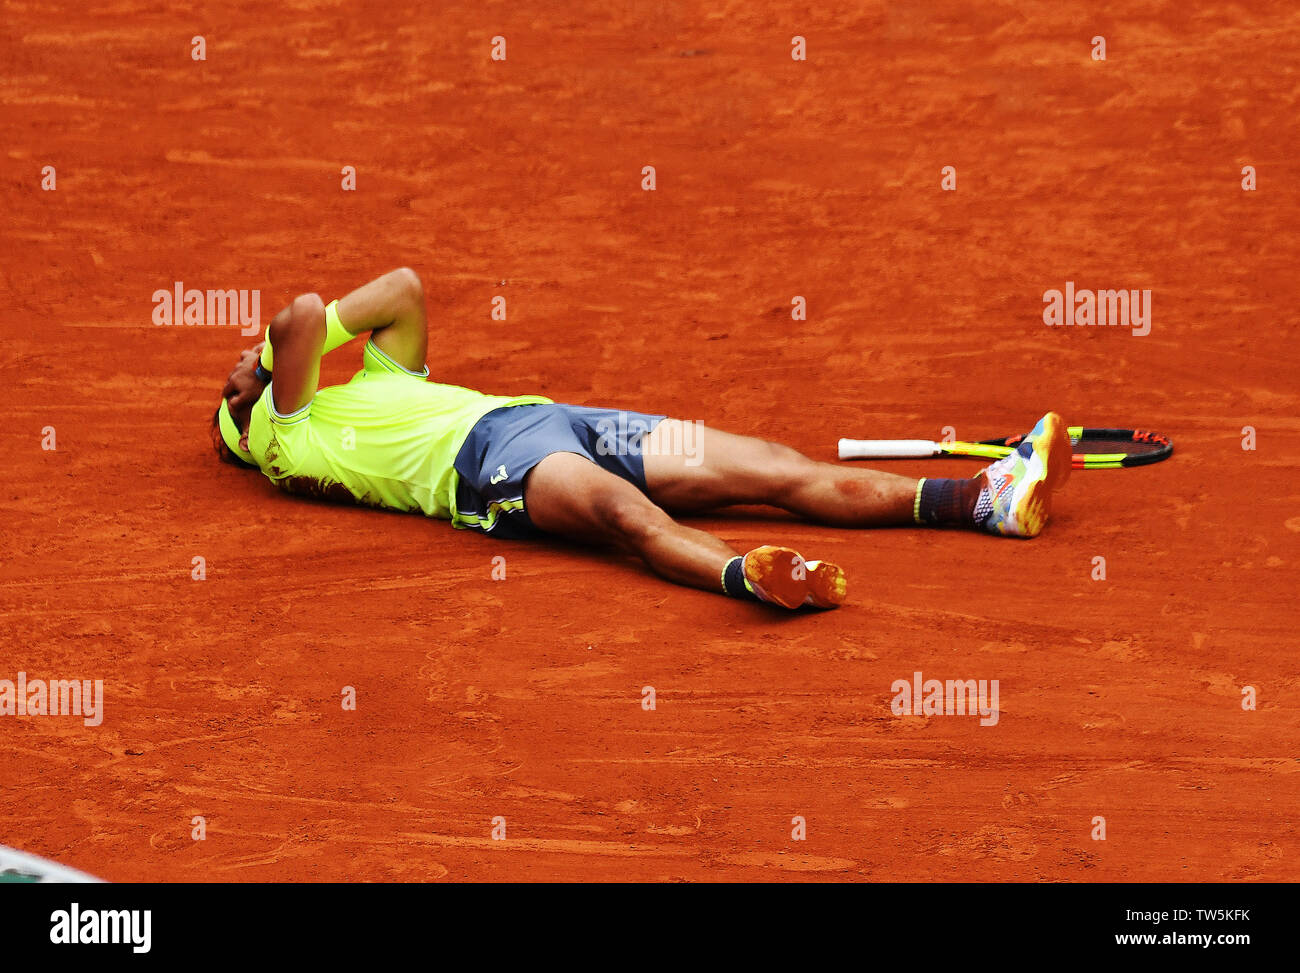 Parigi Francia French Open Championships Roland Garros Rafa Nadal (ESP) cade al suolo e celebra come vince un record xii Mens singles titolo Foto Stock